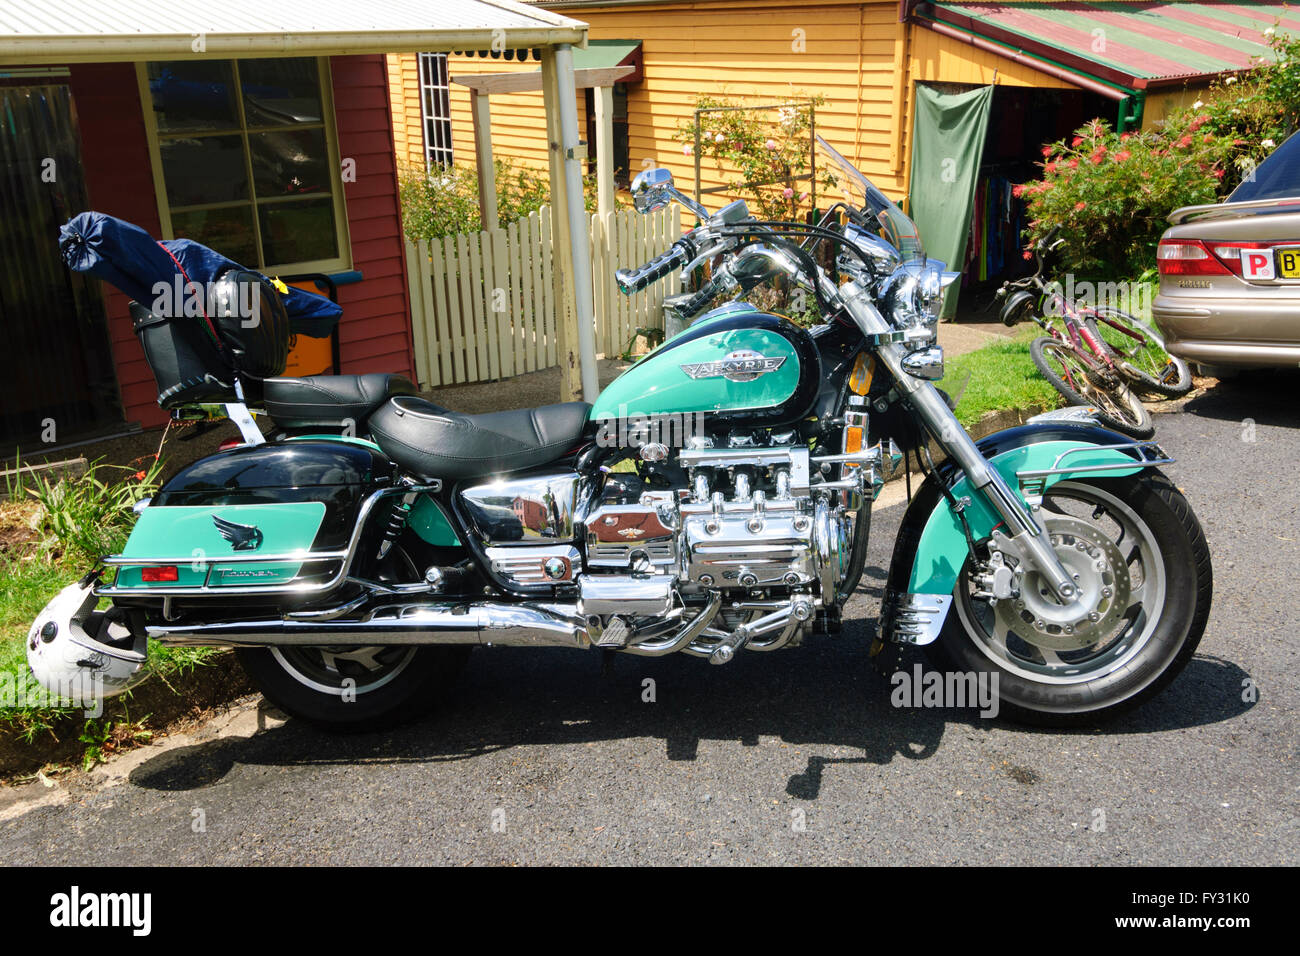 Honda F6 Valkyrie grüne Tourer Motorrad, Australien Stockfotografie - Alamy